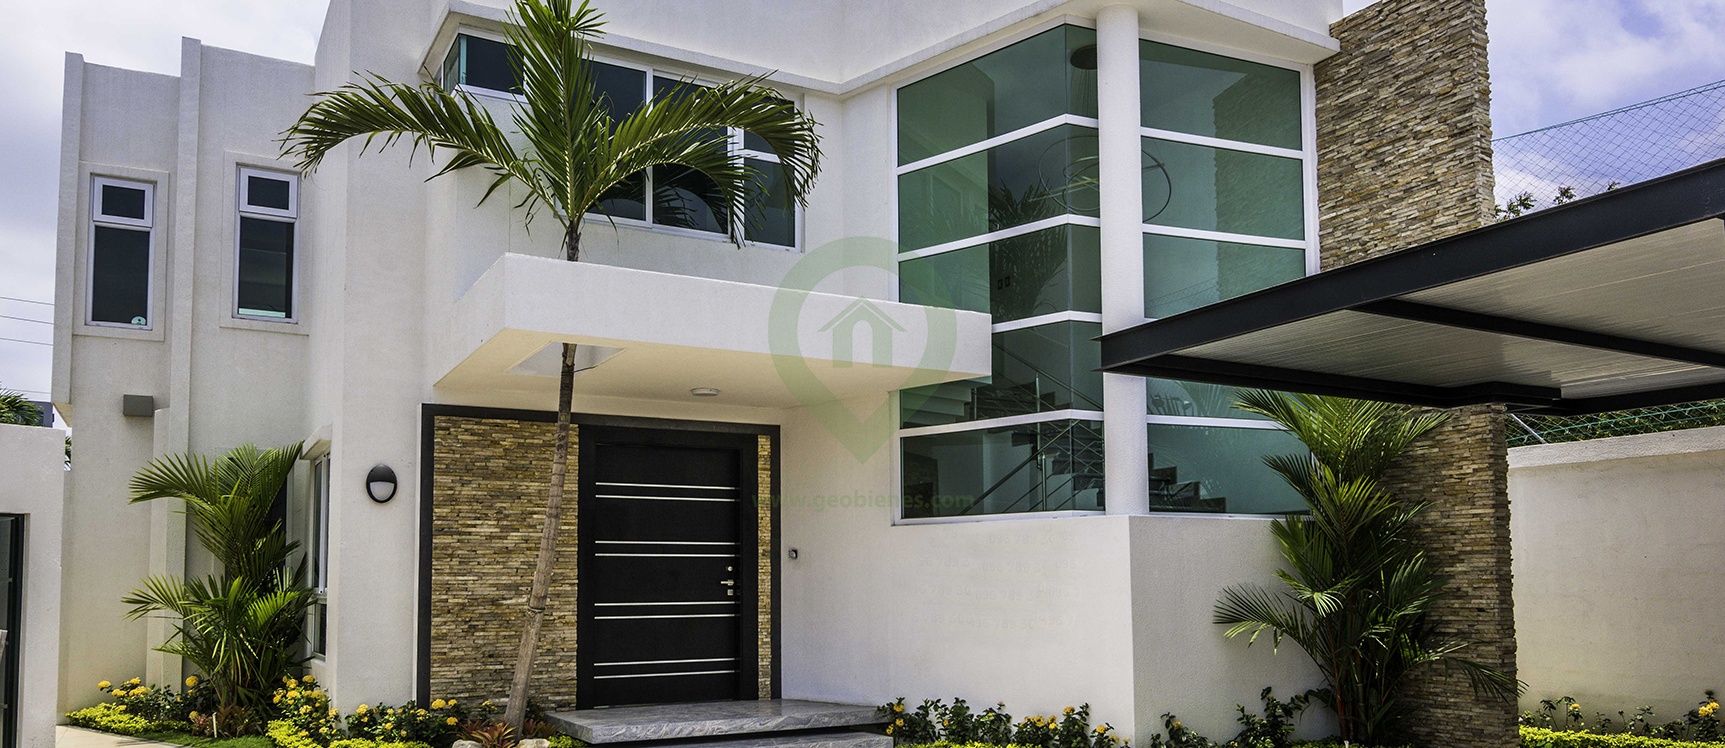 GeoBienes - Casa en venta Villa 5 en Mocolí Gardens en Vía a Samborondón - Plusvalia Guayaquil Casas de venta y alquiler Inmobiliaria Ecuador